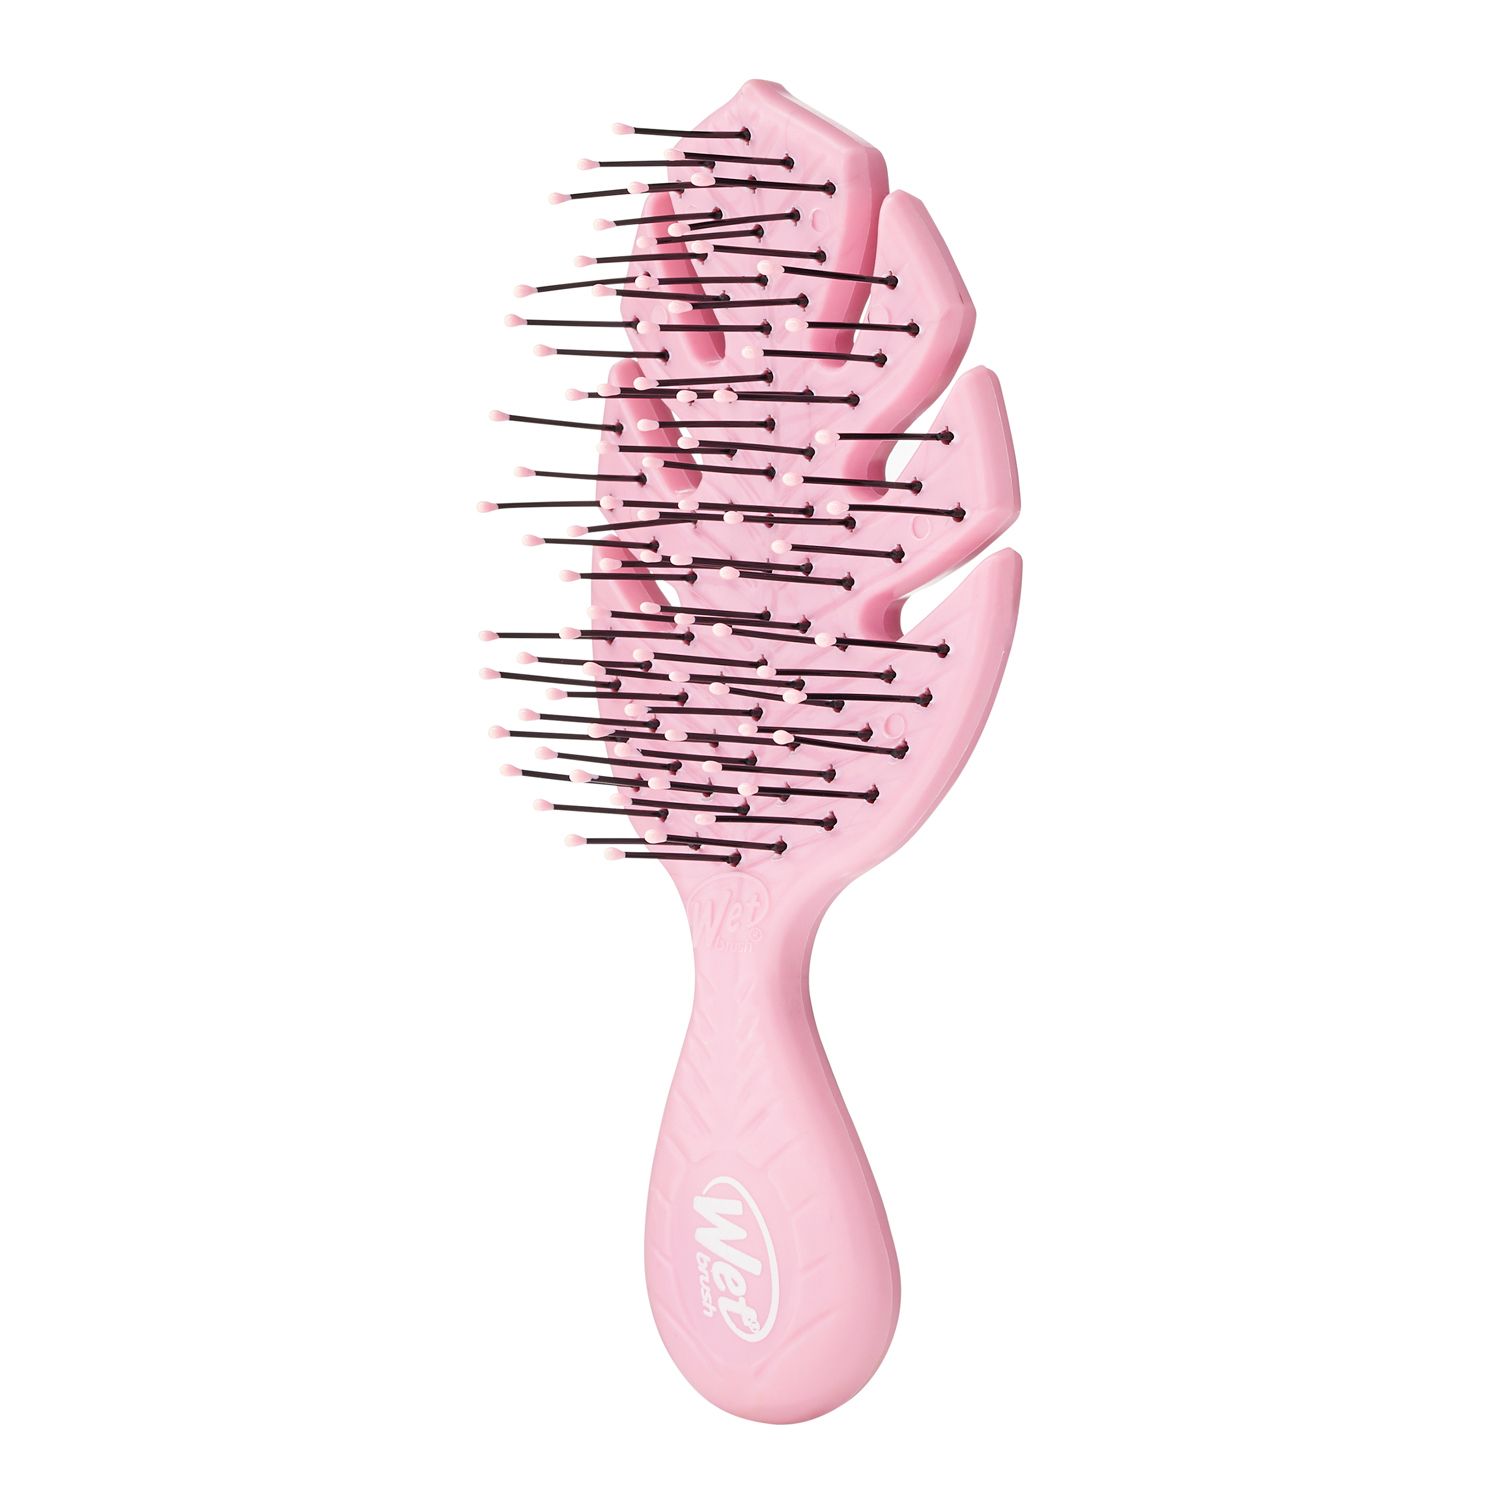 Pink Tools — HI-SPEC® Tools Official Site